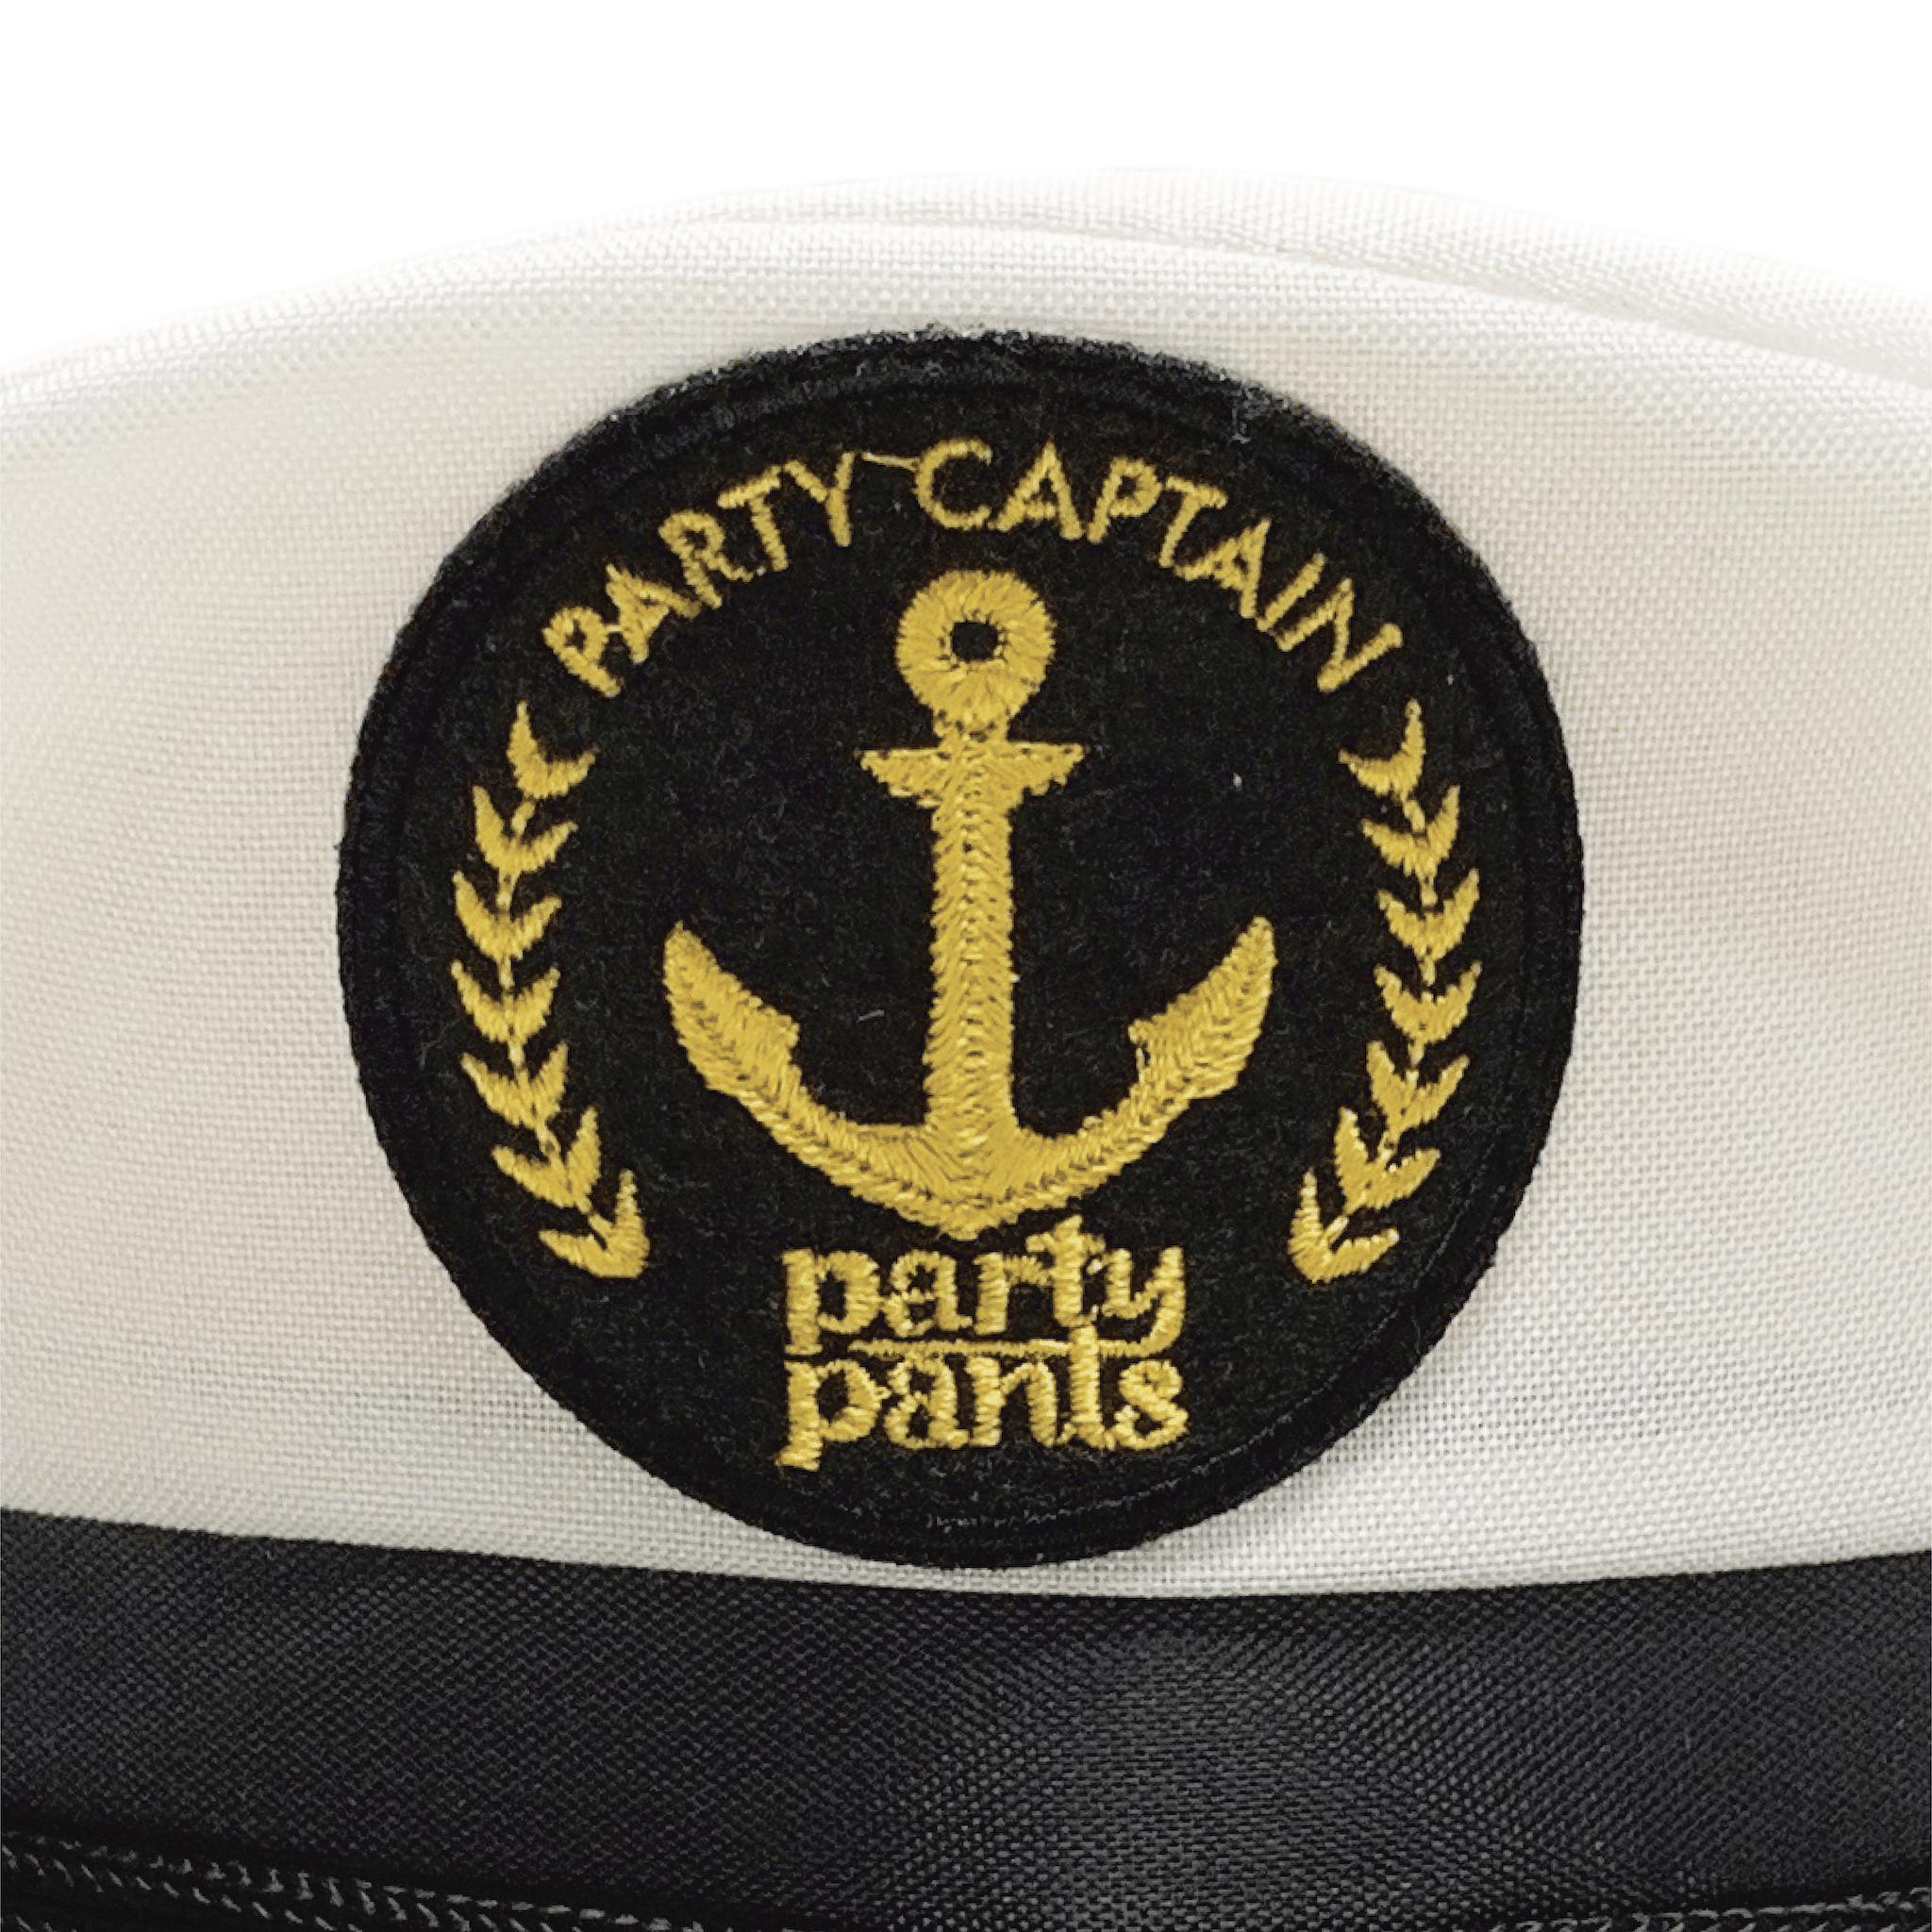 PARTY CAPTAIN HAT HATS PARTY PANTS 